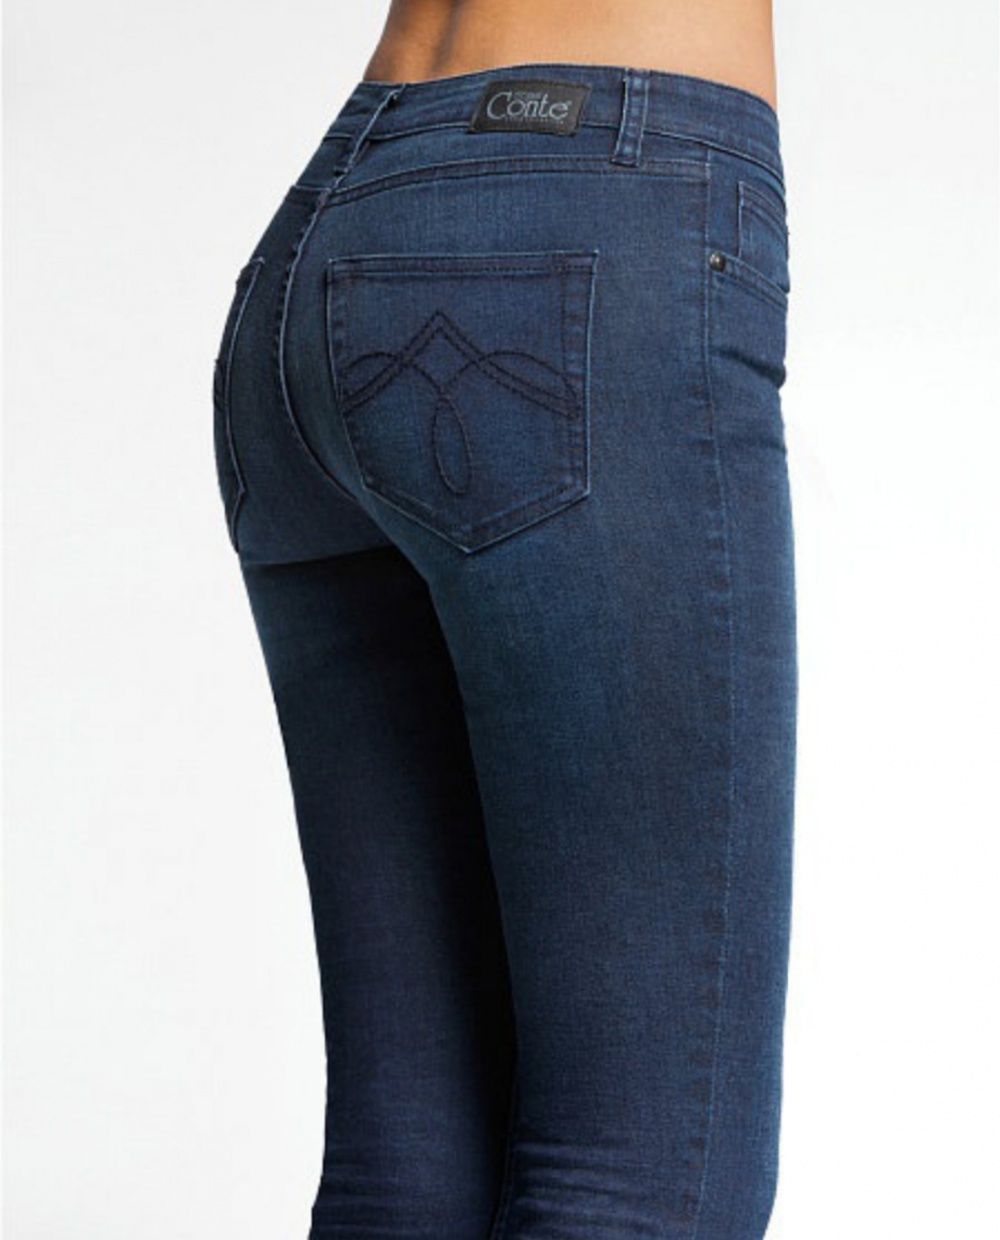 Цвет темных джинс. Джинсы 416781 Conte. Conte Elegant Denim collection джинсы. Джинсы 116781 Conte. Синие джинсы женские.